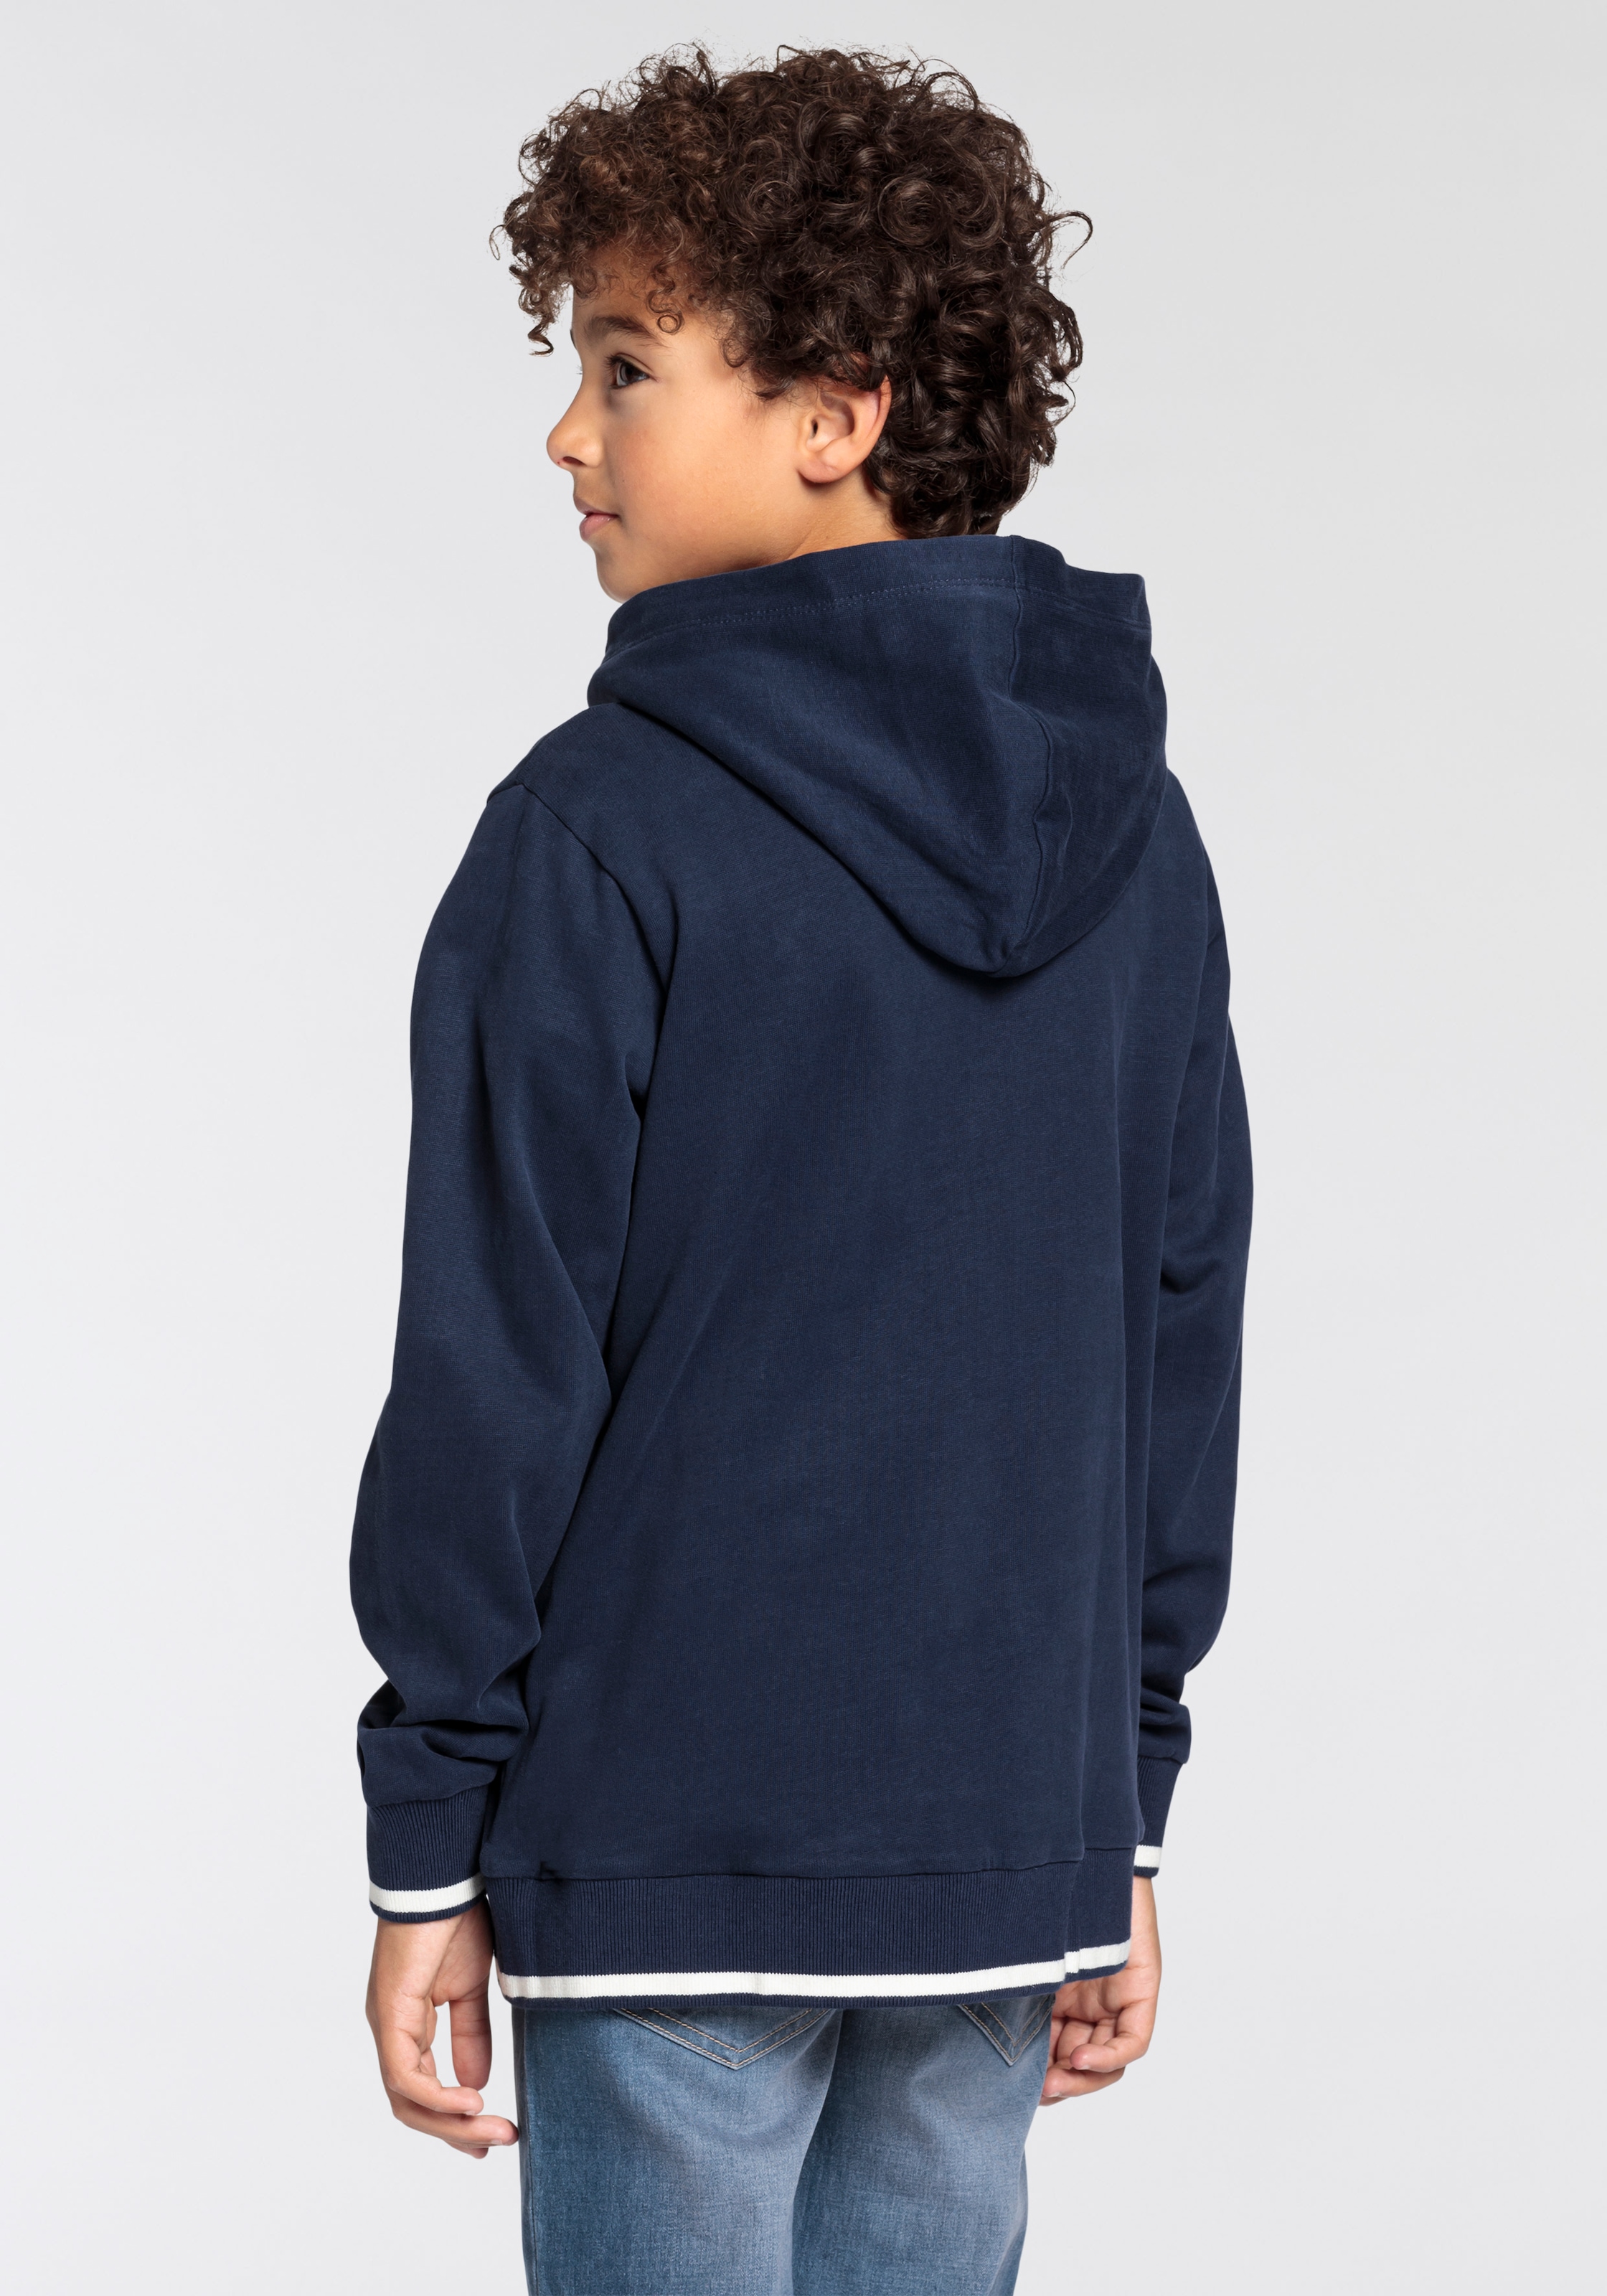 DELMAO Kapuzensweatshirt »für Jungen«, Logo-Sweathirt der neuen Marke Delmao  online kaufen | BAUR